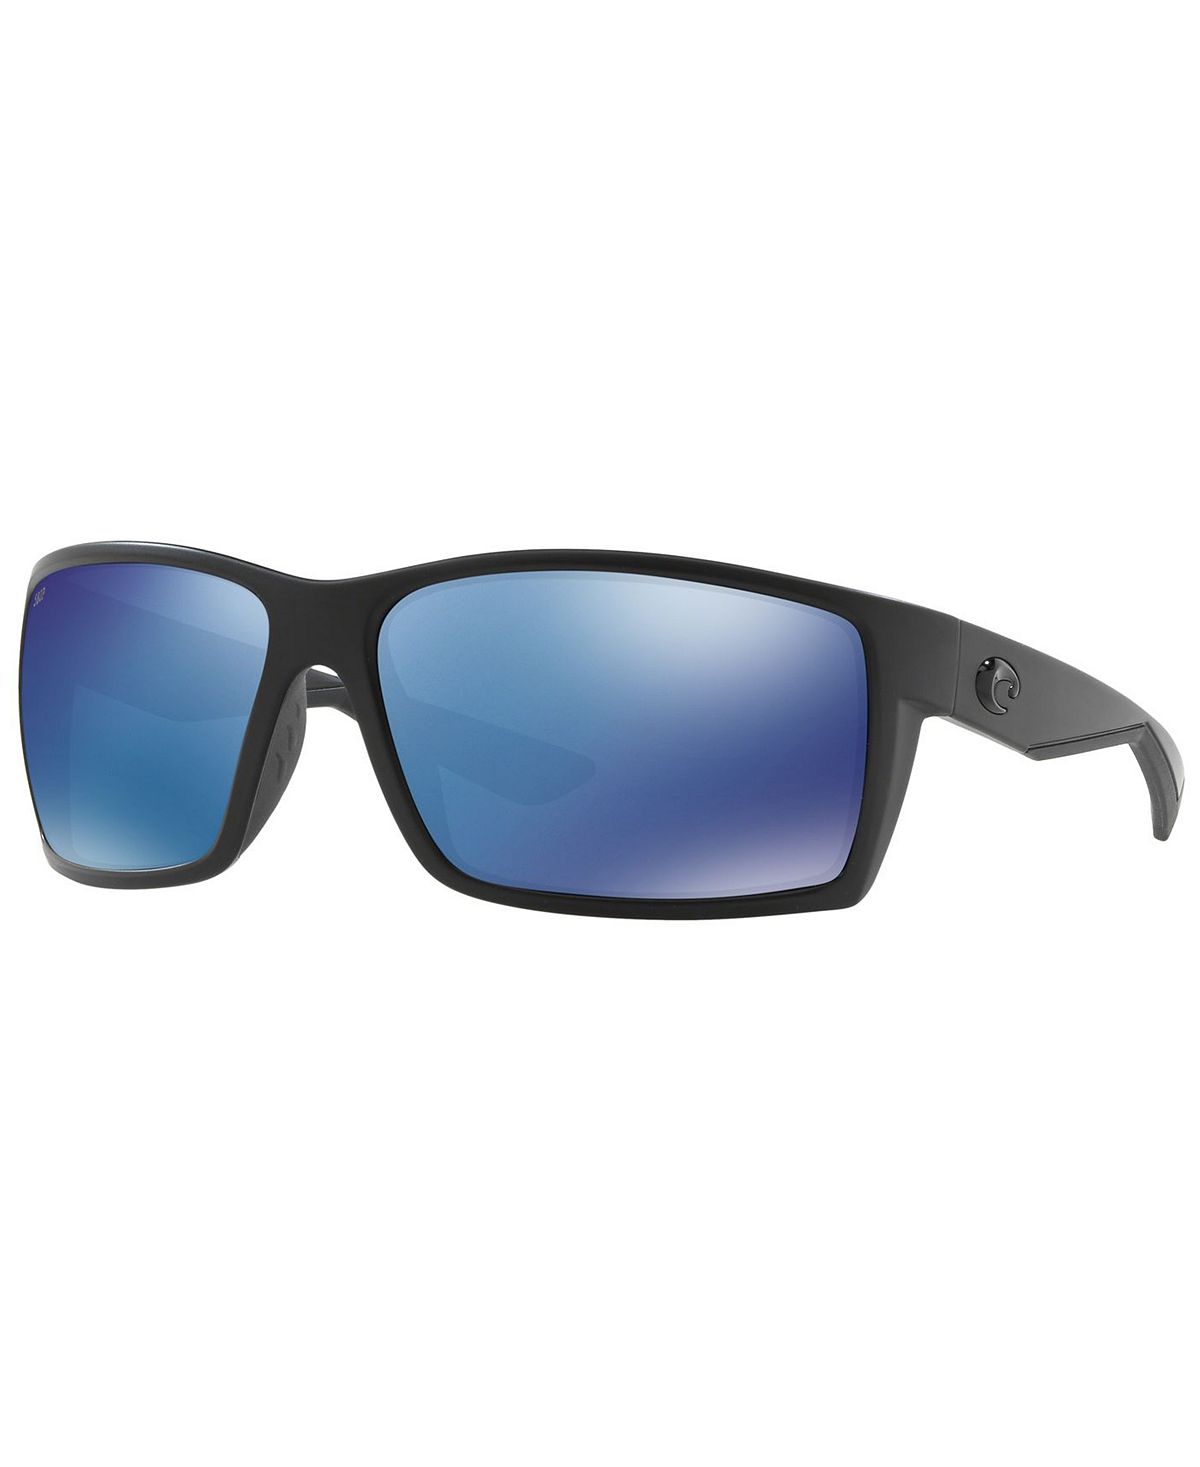 Поляризационные солнцезащитные очки, REEFTON 64 Costa Del Mar цена и фото